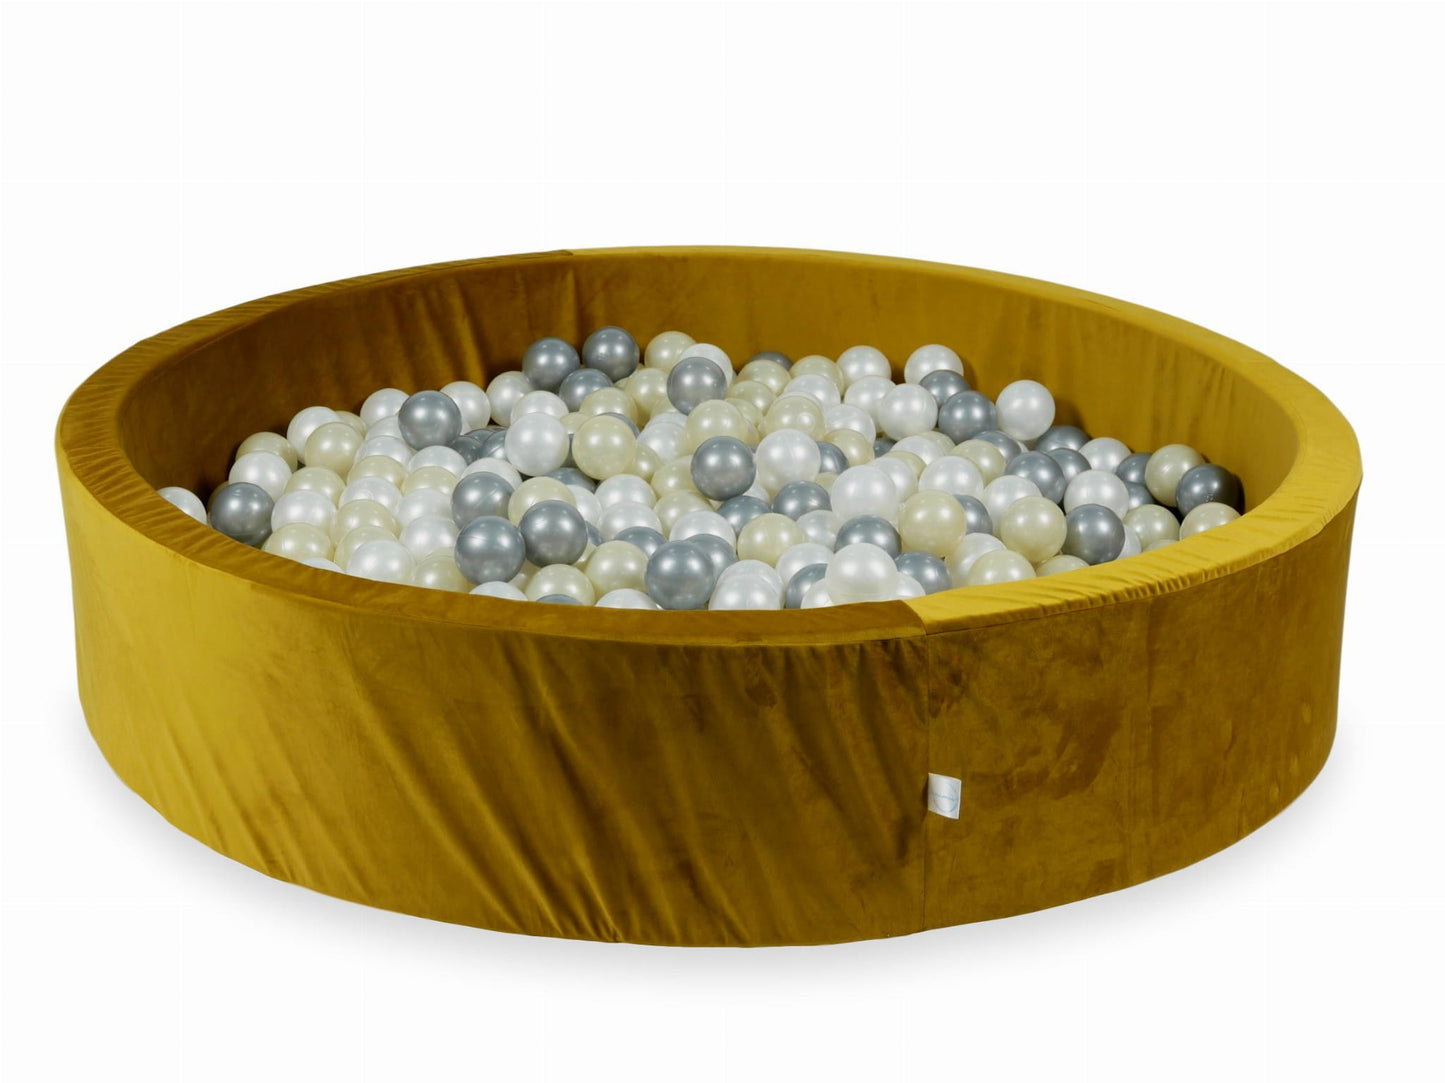 Piscine à Balles 130x30 Velvet or avec balles 600 pcs (or clair, argent, perle)